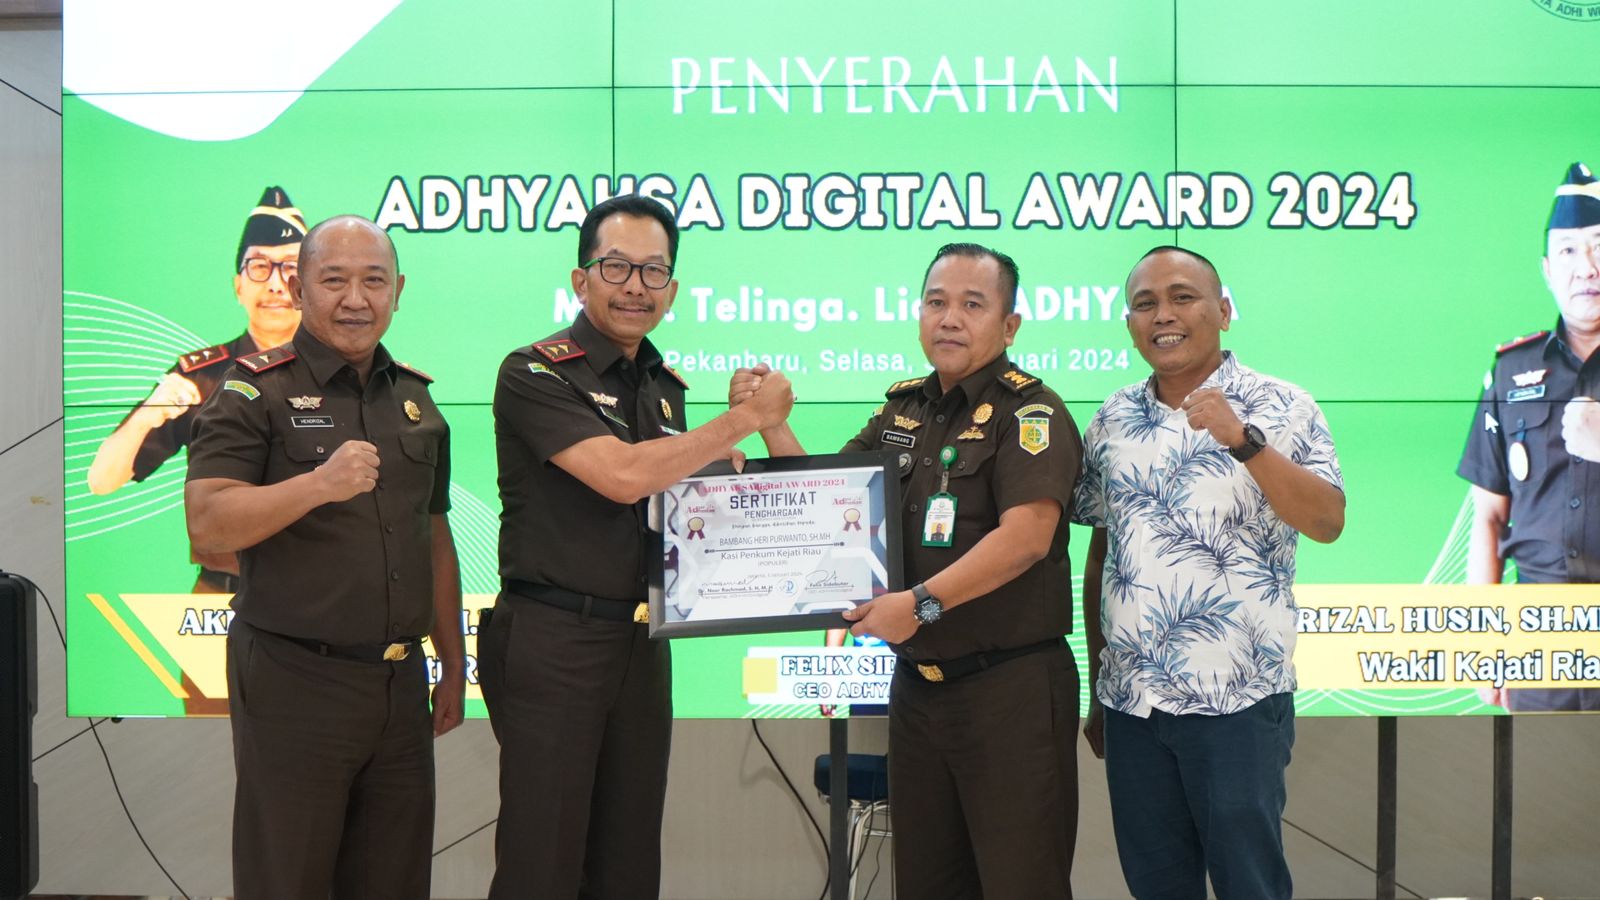 Dinilai sebagai Sosok Pemimpin yang Humanis, Kajati Riau Terima Penghargaan Adhyaksa Digital Award 2024